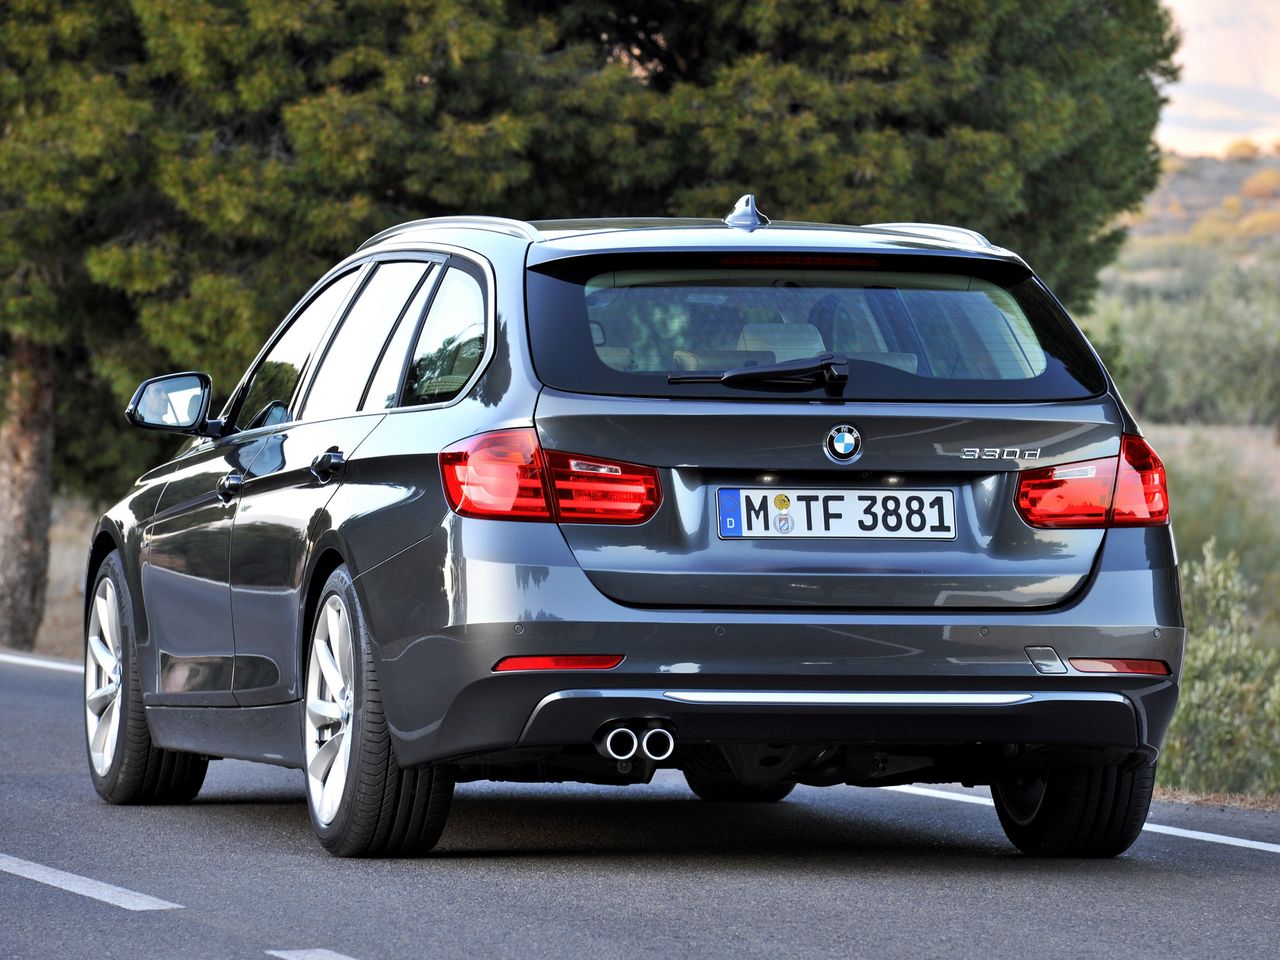 Używane BMW Serii 3 (F30) w pigułce. Samochód ładny, ale ryzykowny